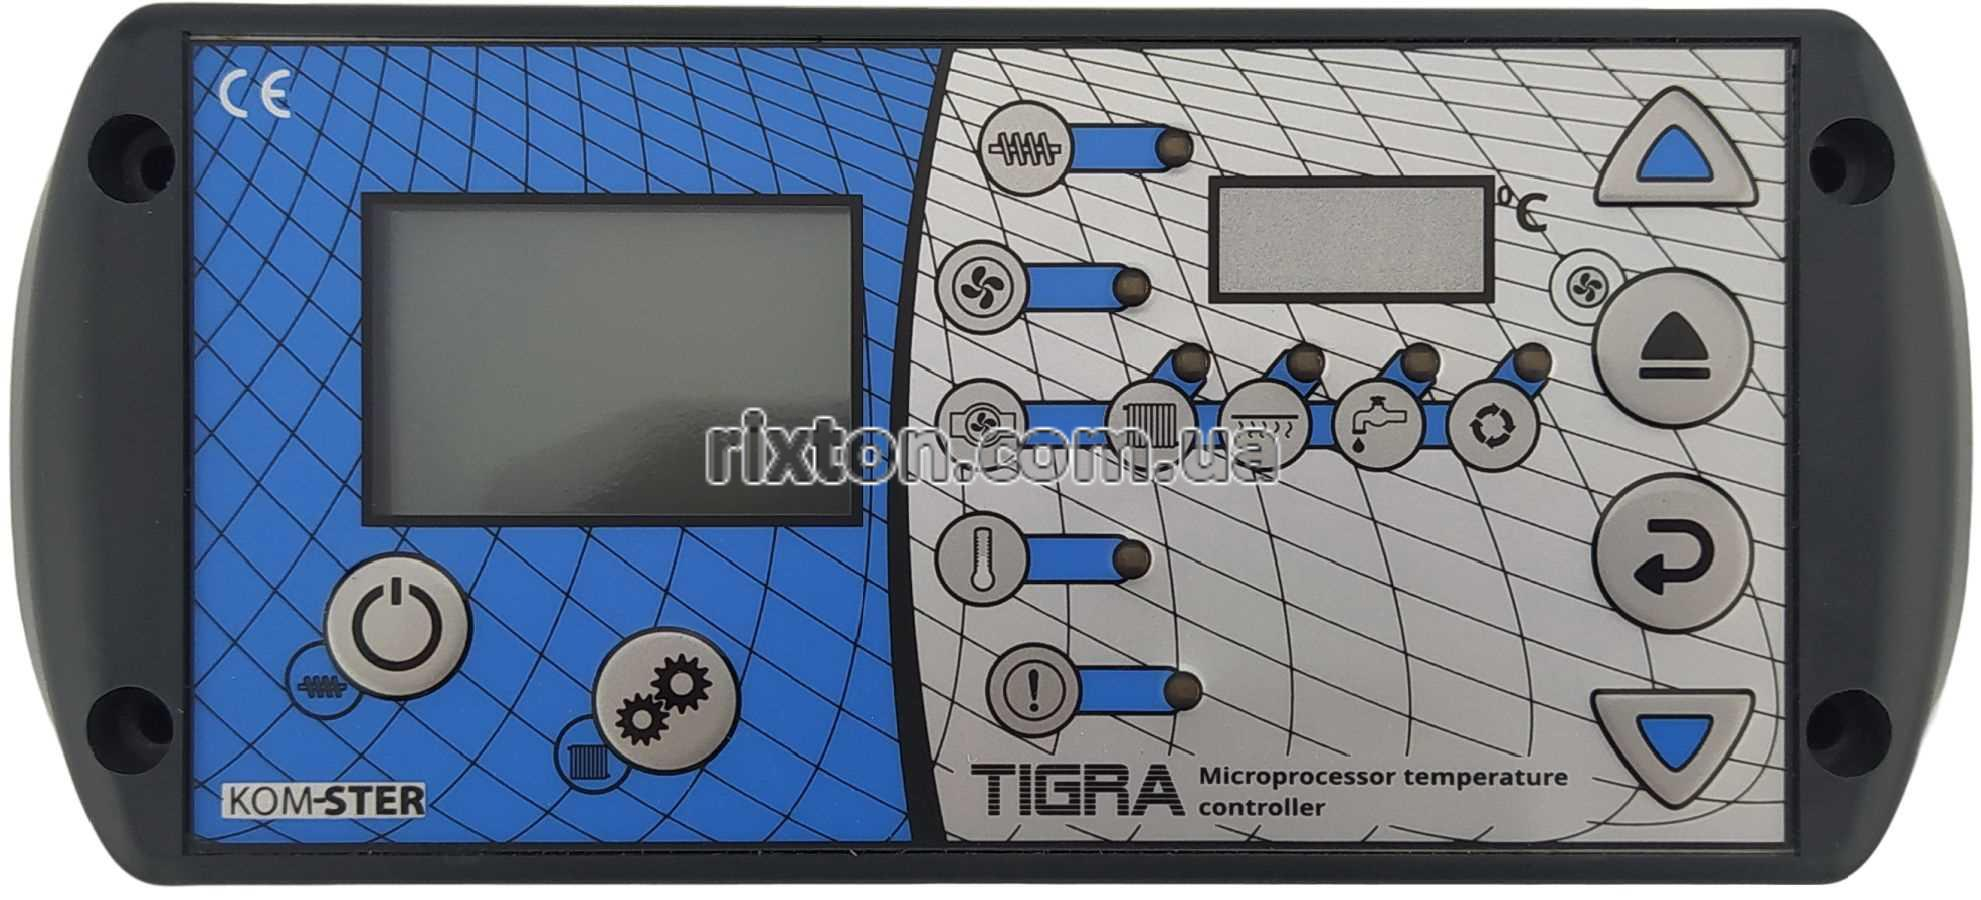 Автоматика для твердопаливних котлів Kom-ster Tigra